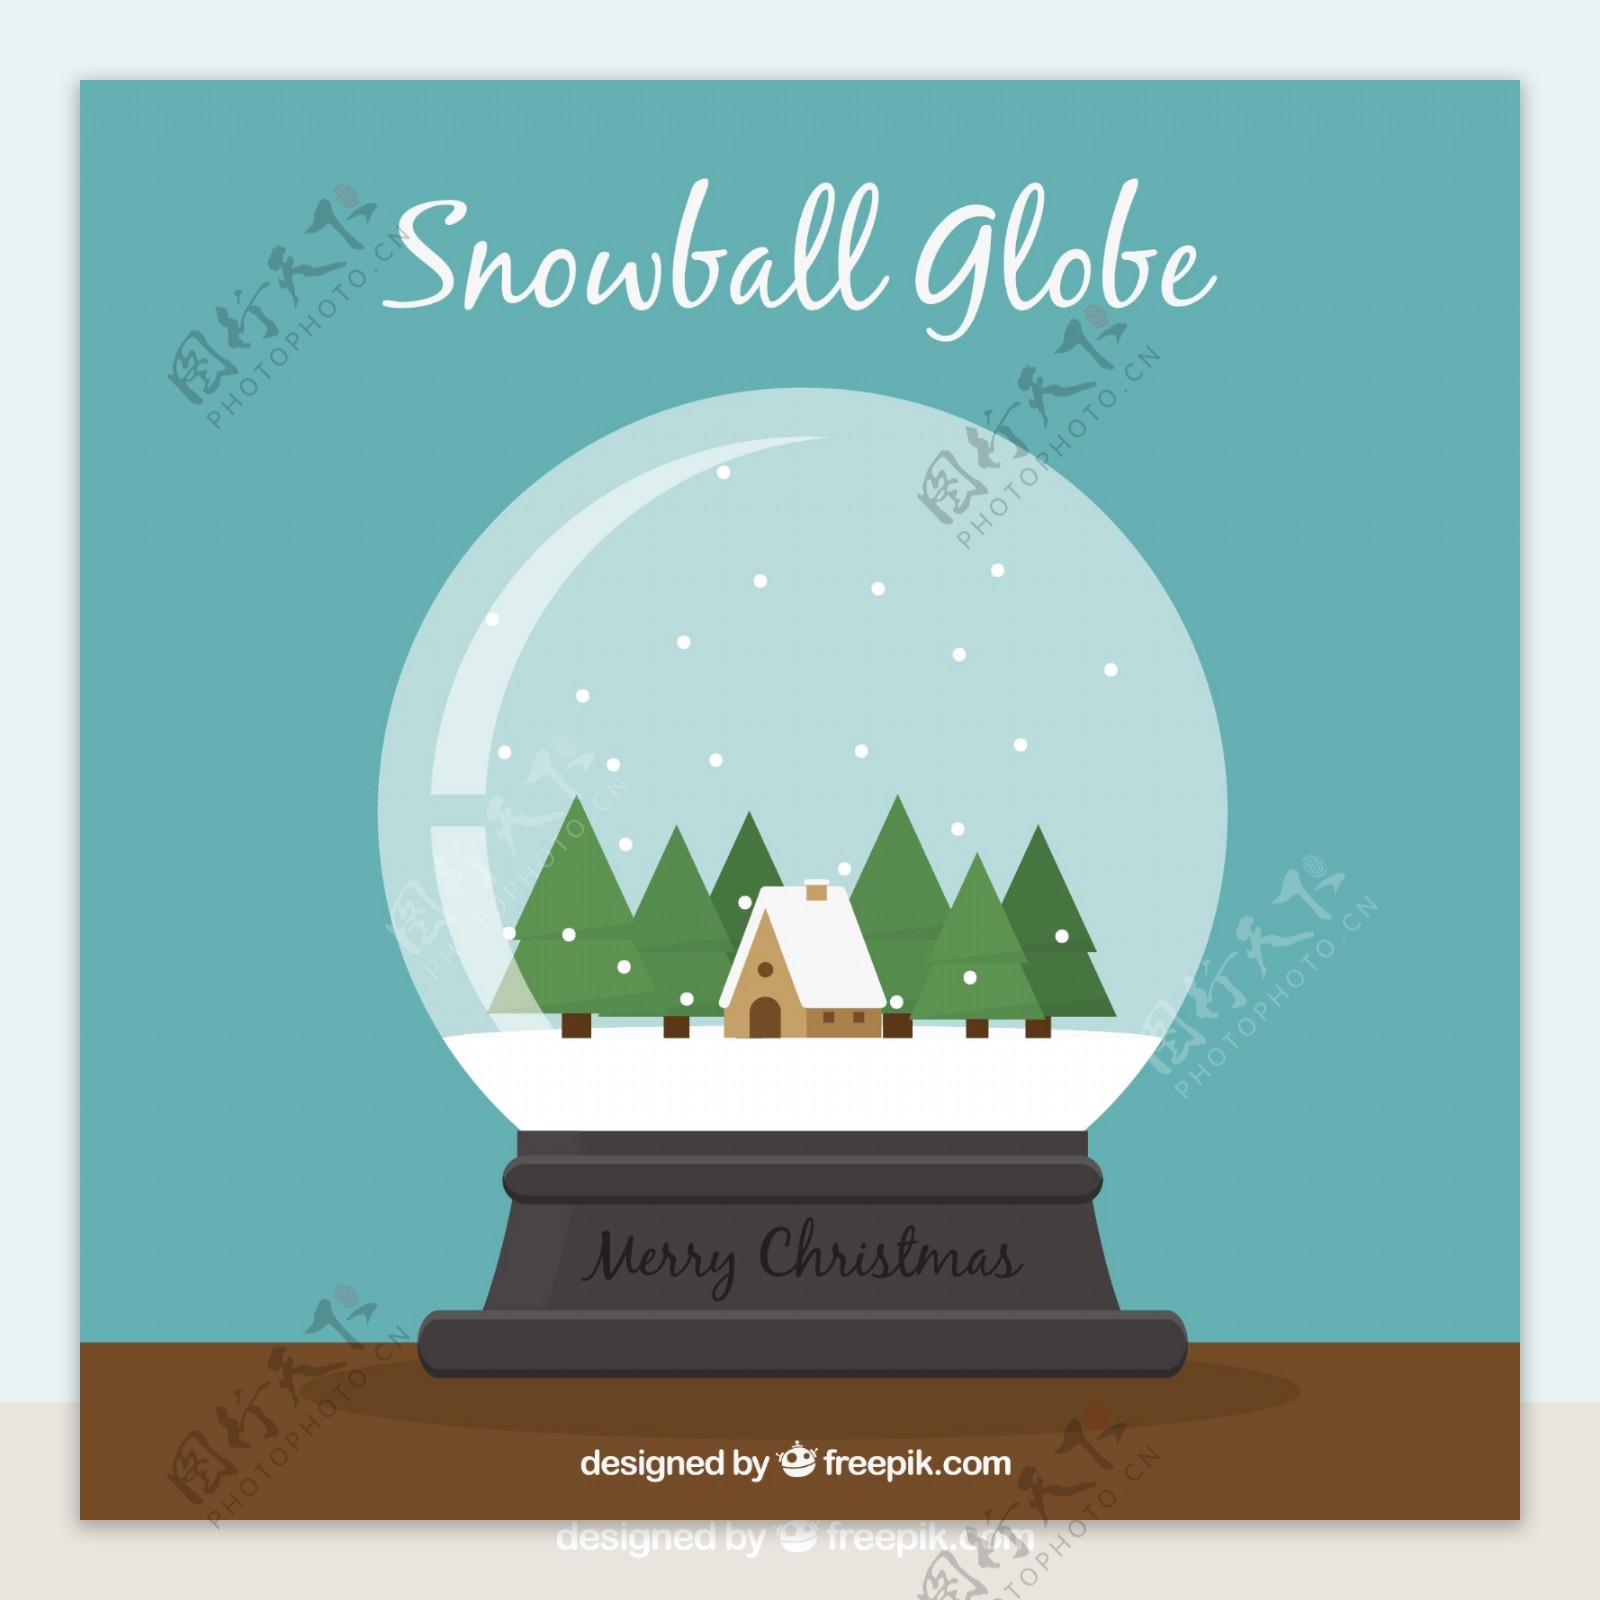 美丽的雪球与房子和树木的背景